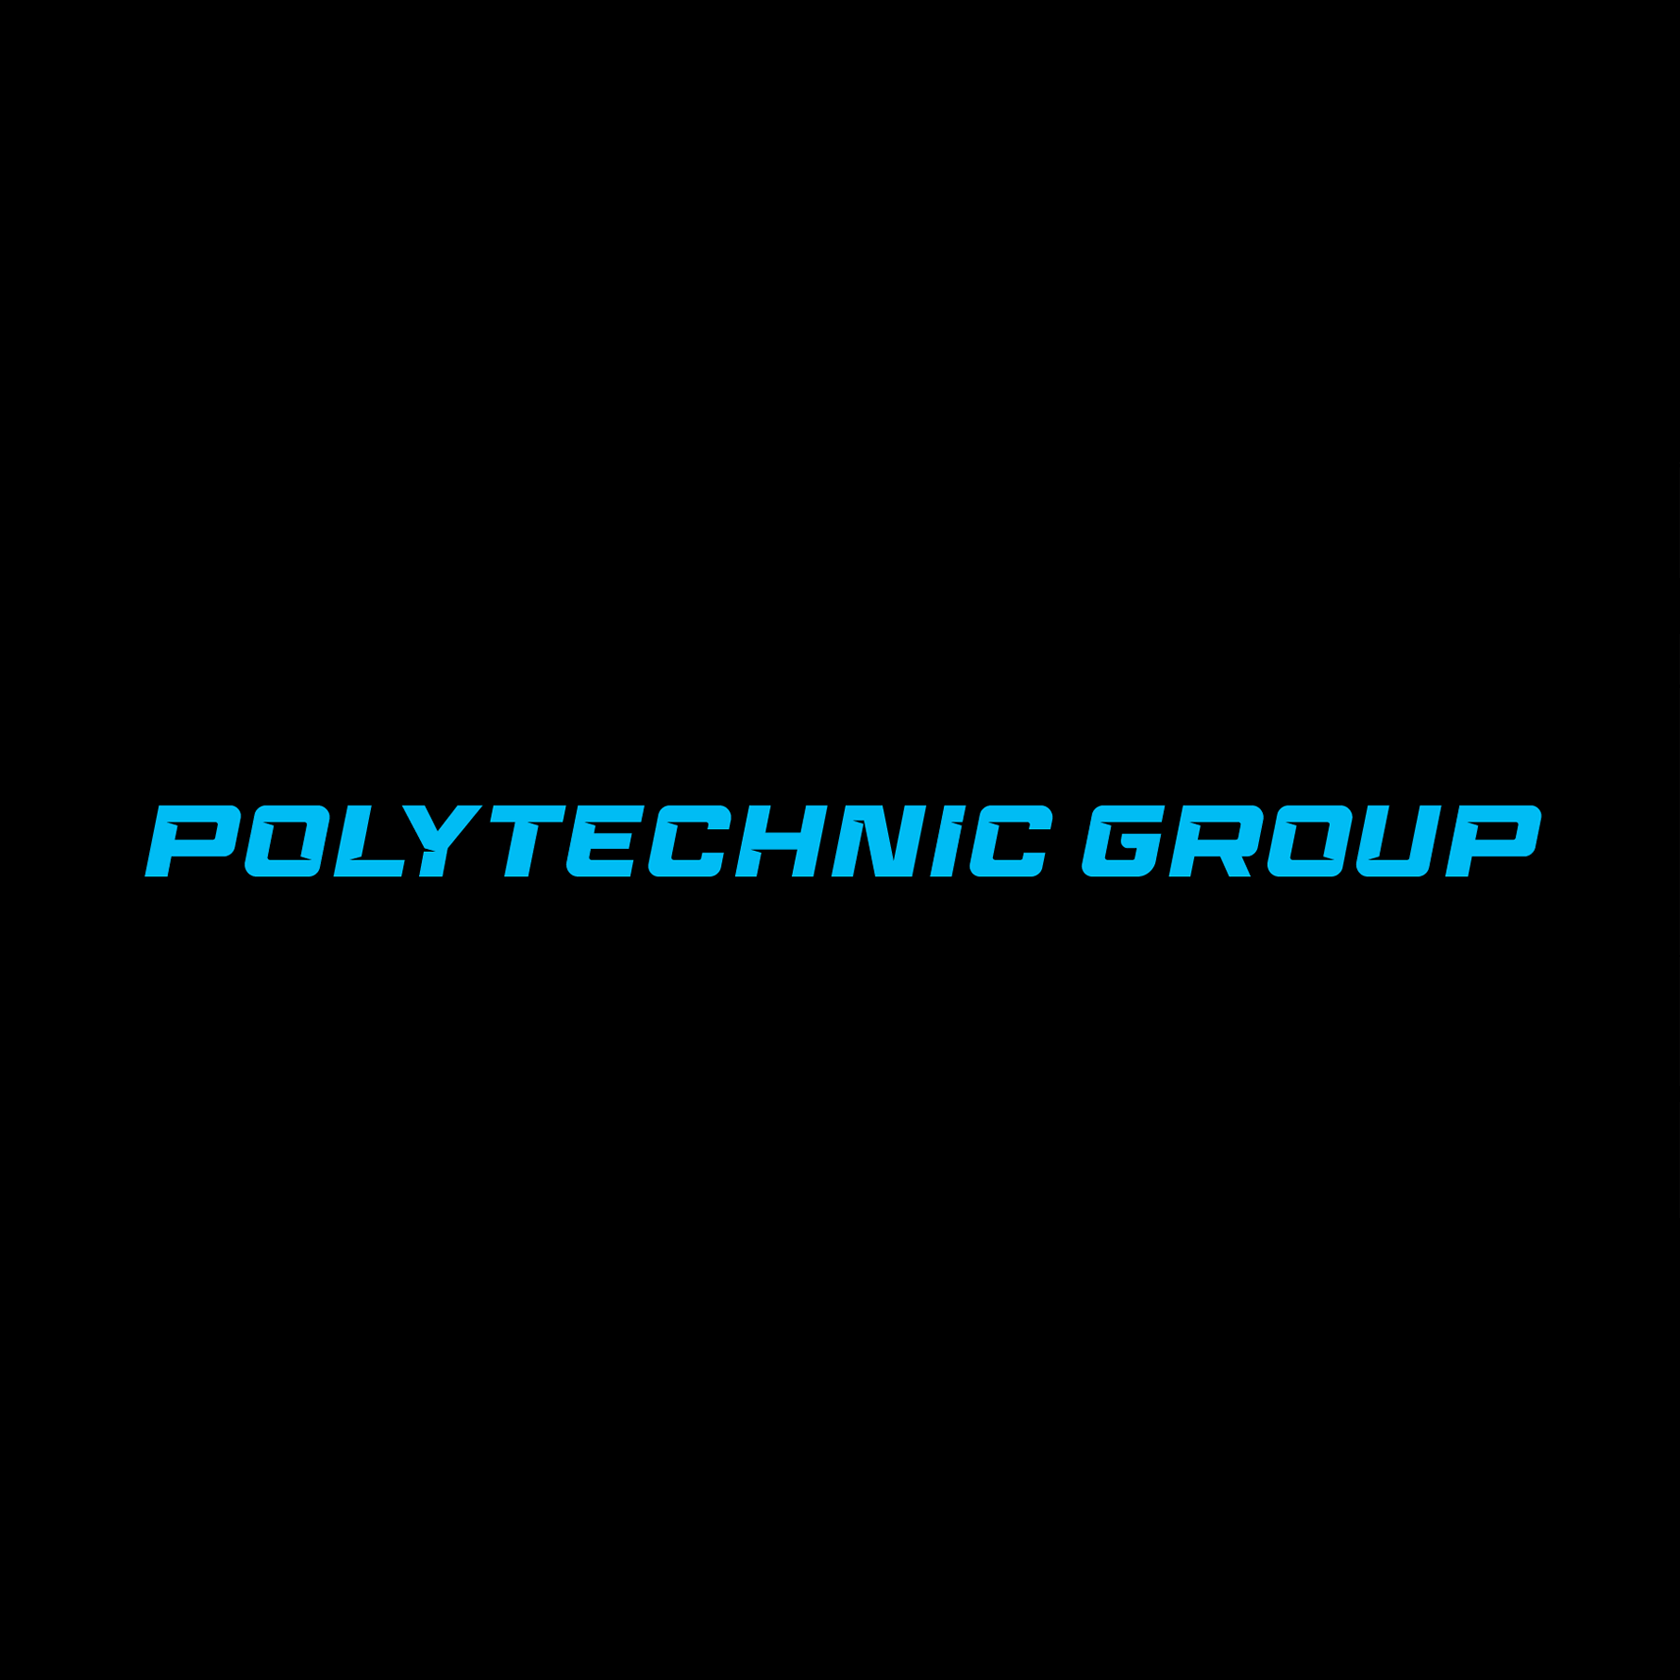 Политехник групп - Город Санкт-Петербург logo.png